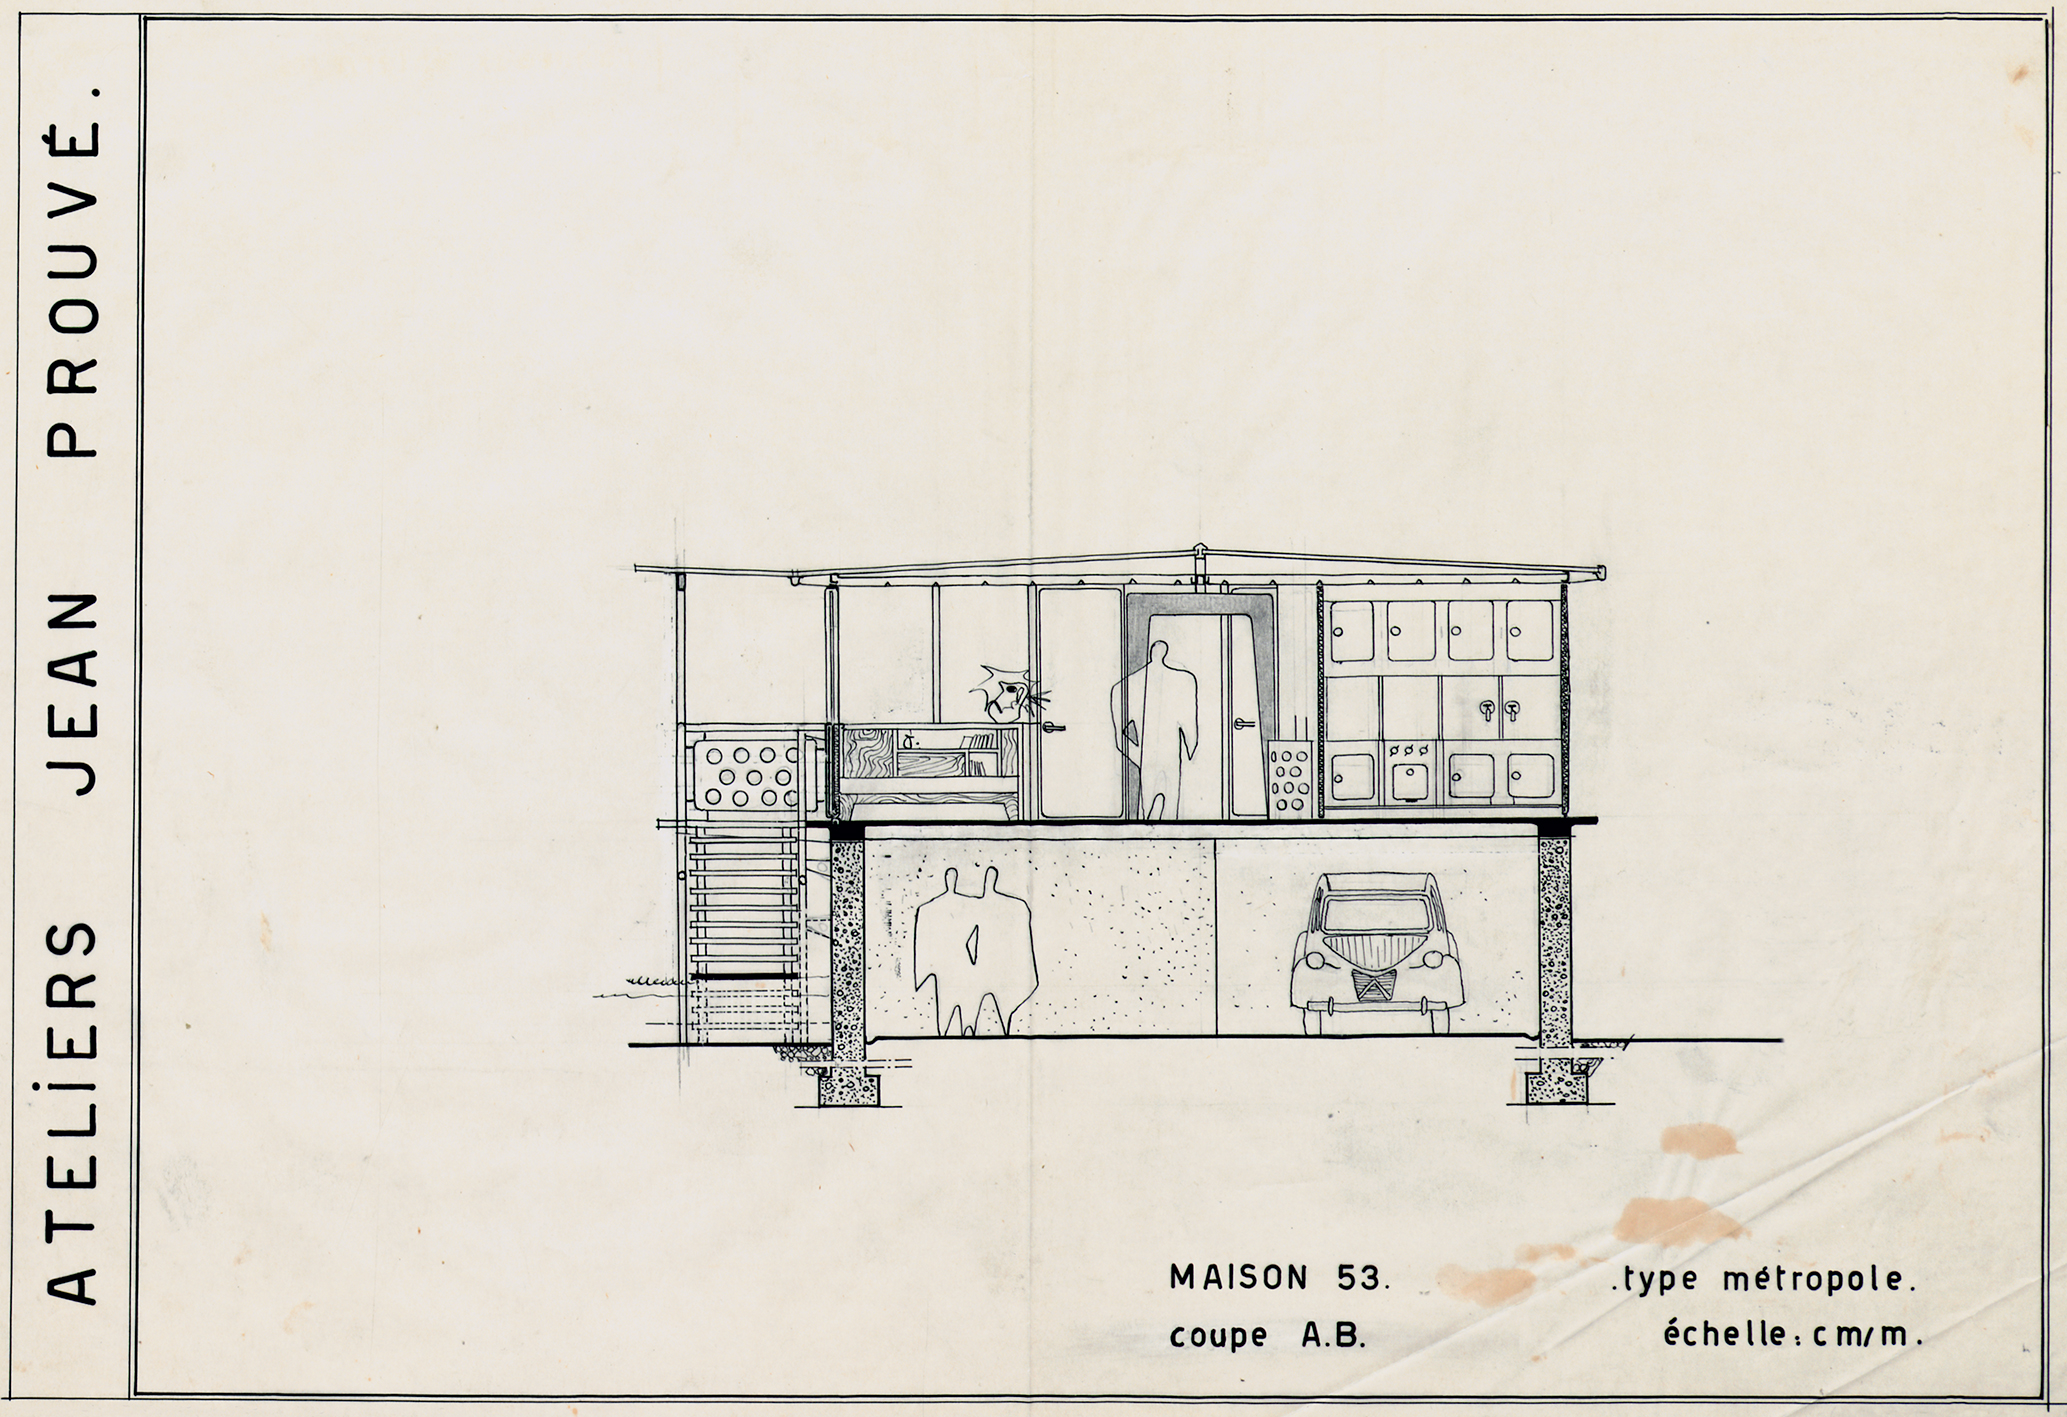 Ateliers Jean Prouvé. « Maison 53, type Métropole, coupe A.B. ». Plan n° 180.250, 1953.